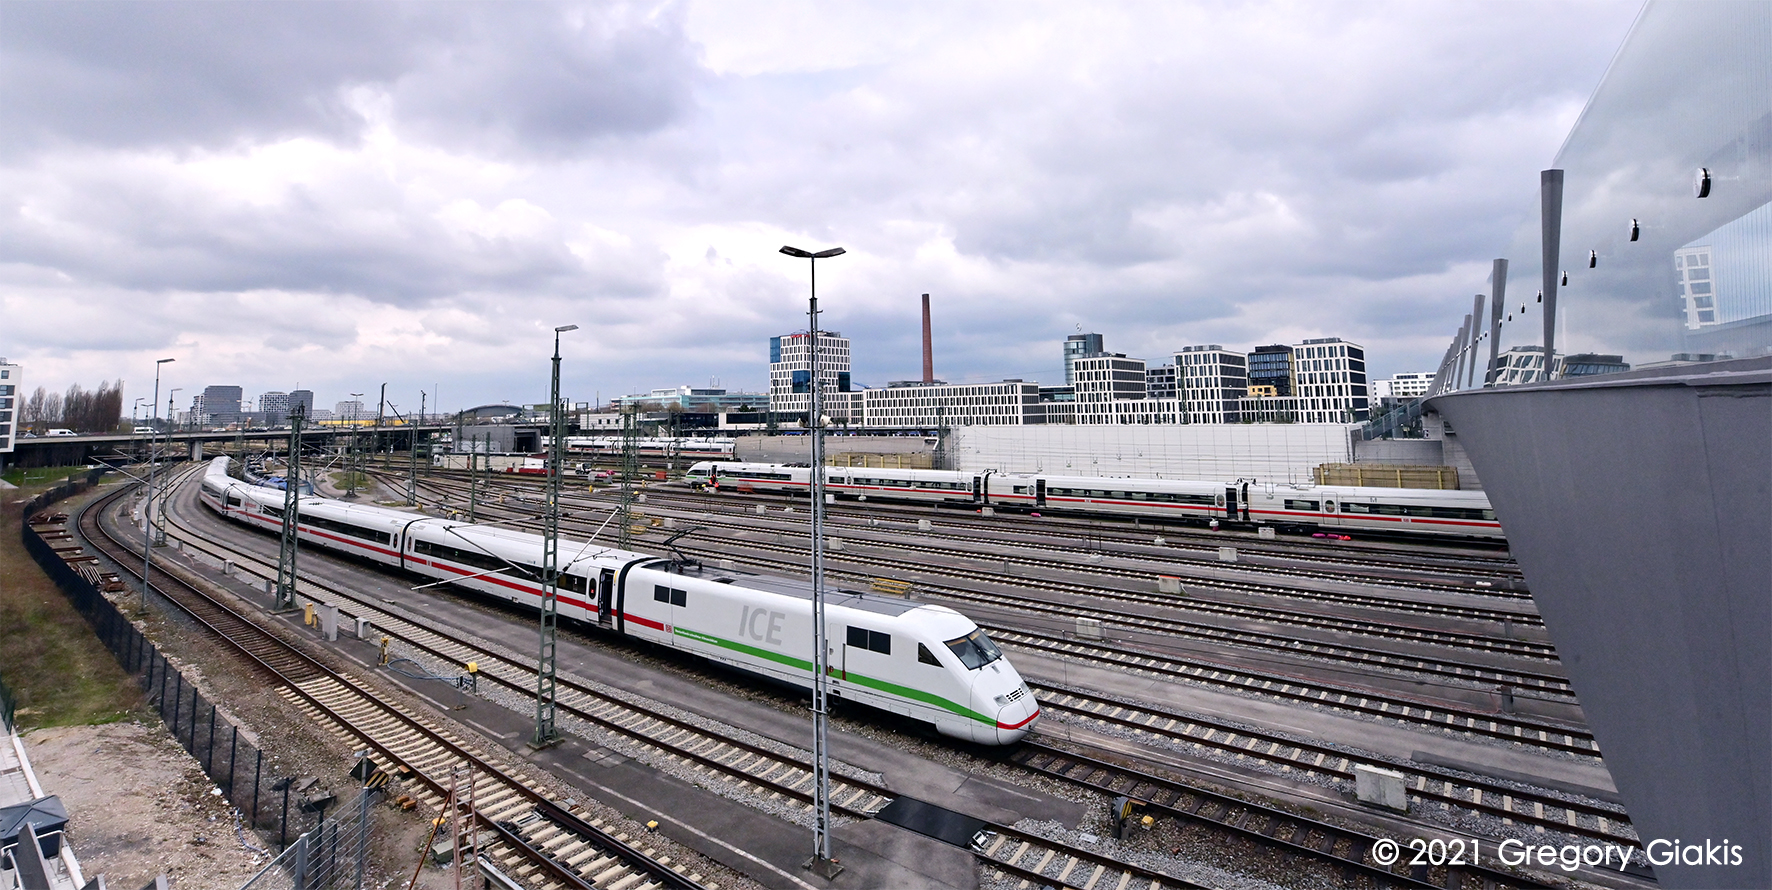 Δωρεάν ταξίδια με το τρένο για νέους που ζουν στην Γερμανία